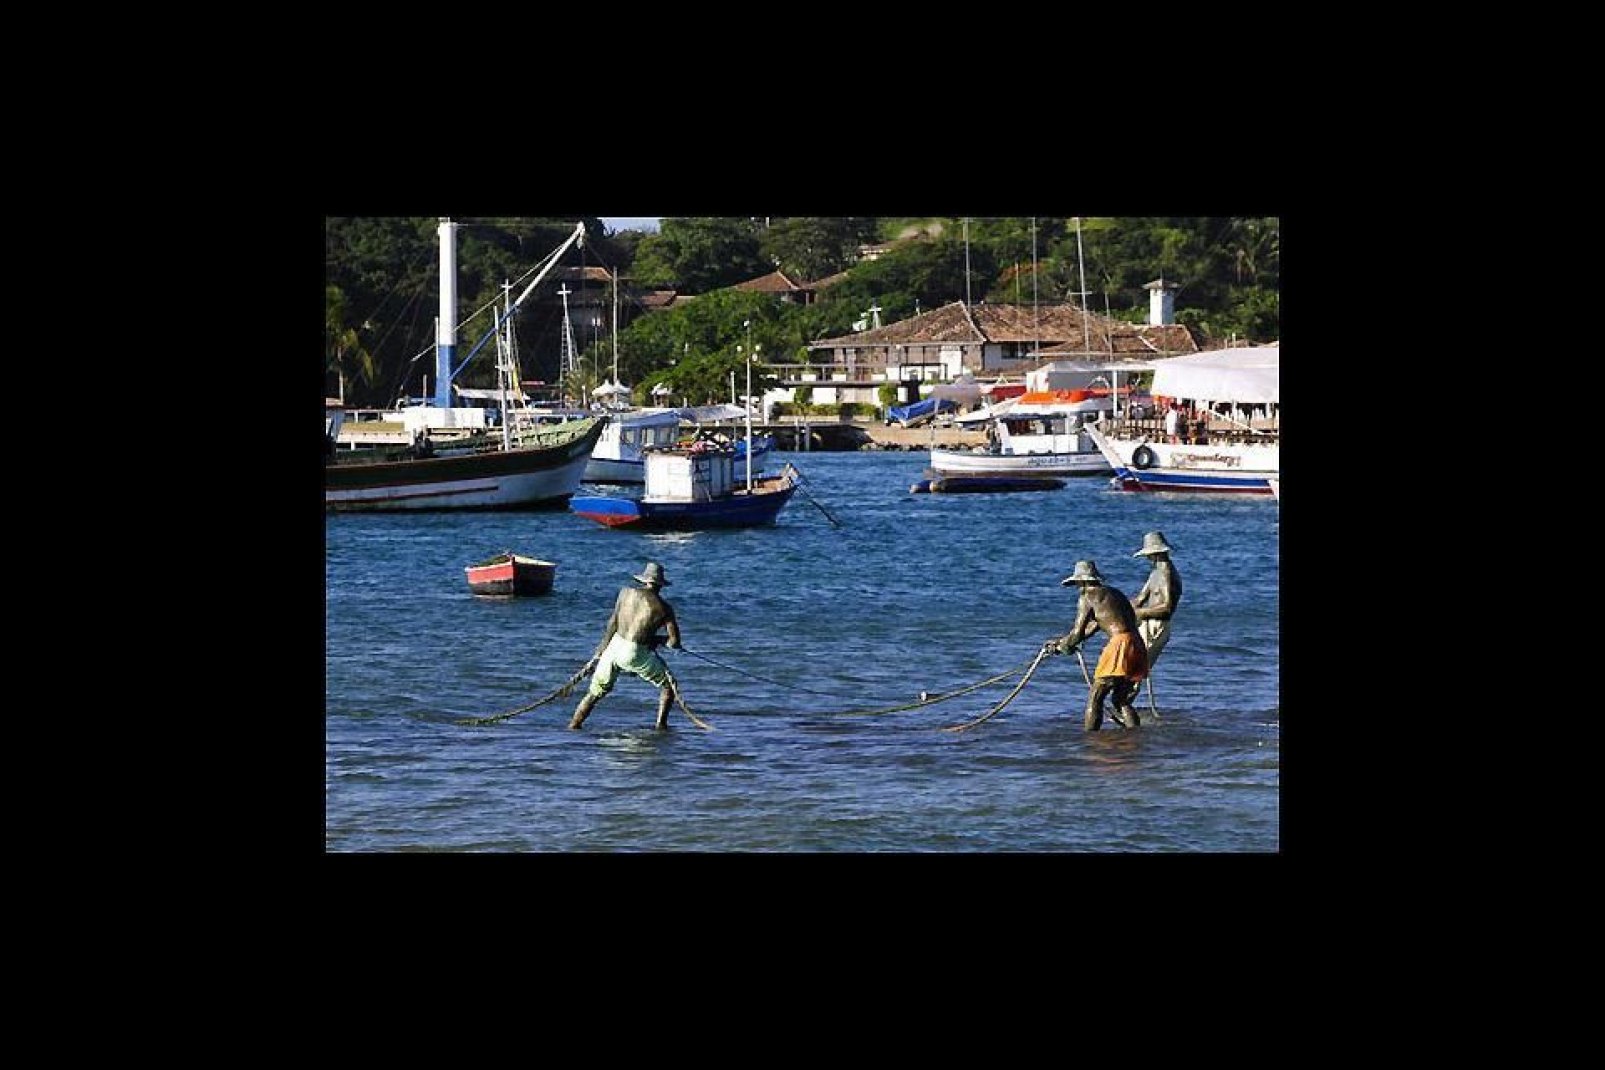 Los tres pescadores echando las redes frente a la Orla Bardot son falsos, pero parecen de verdad, sobre todo cuando está la marea alta.